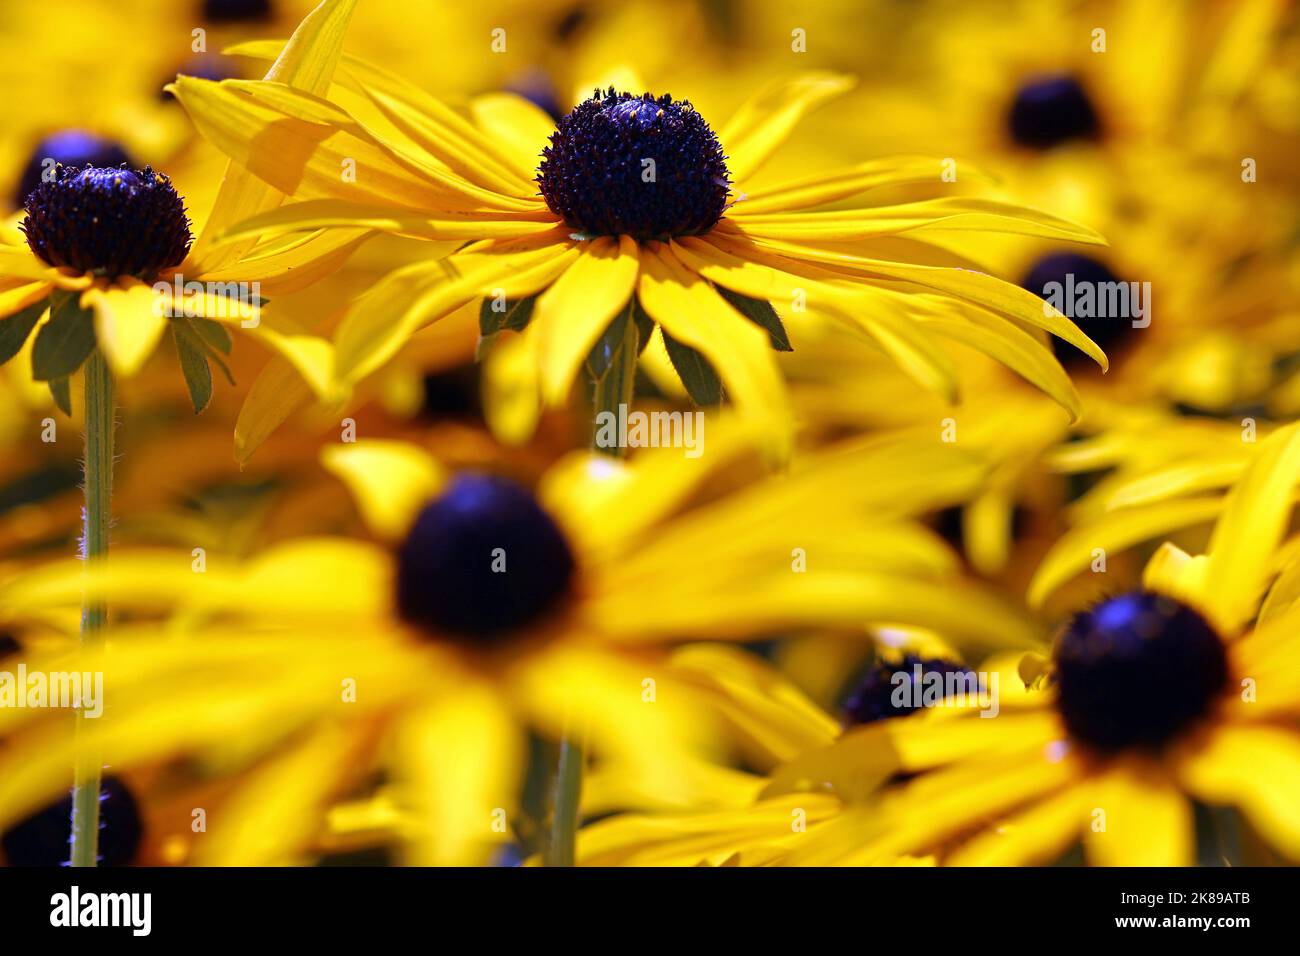 Macro immagine di un fiore giallo brillante Rudbeckia con cono centrale marrone cioccolato, che spicca tra molti Rudbeckia circostanti. Agosto, Inghilterra Foto Stock